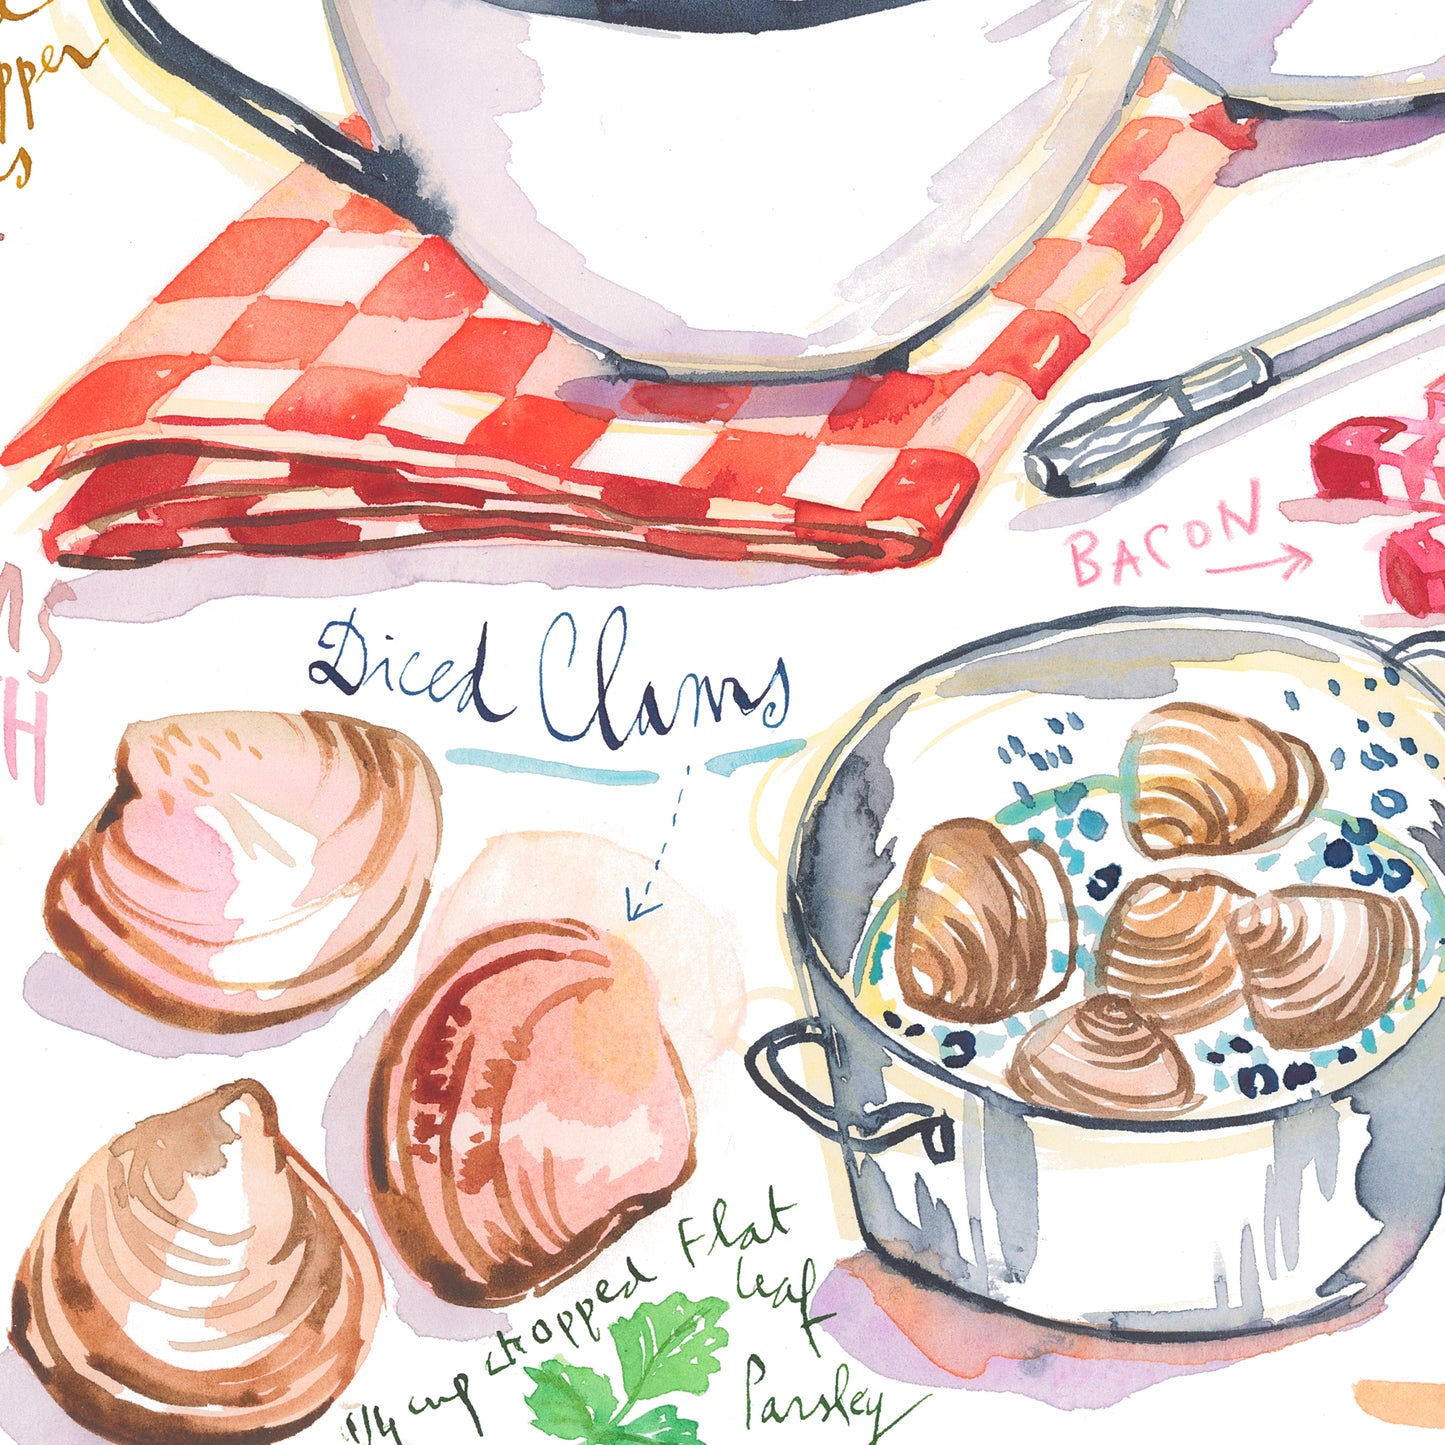 Manhattan clam chowder